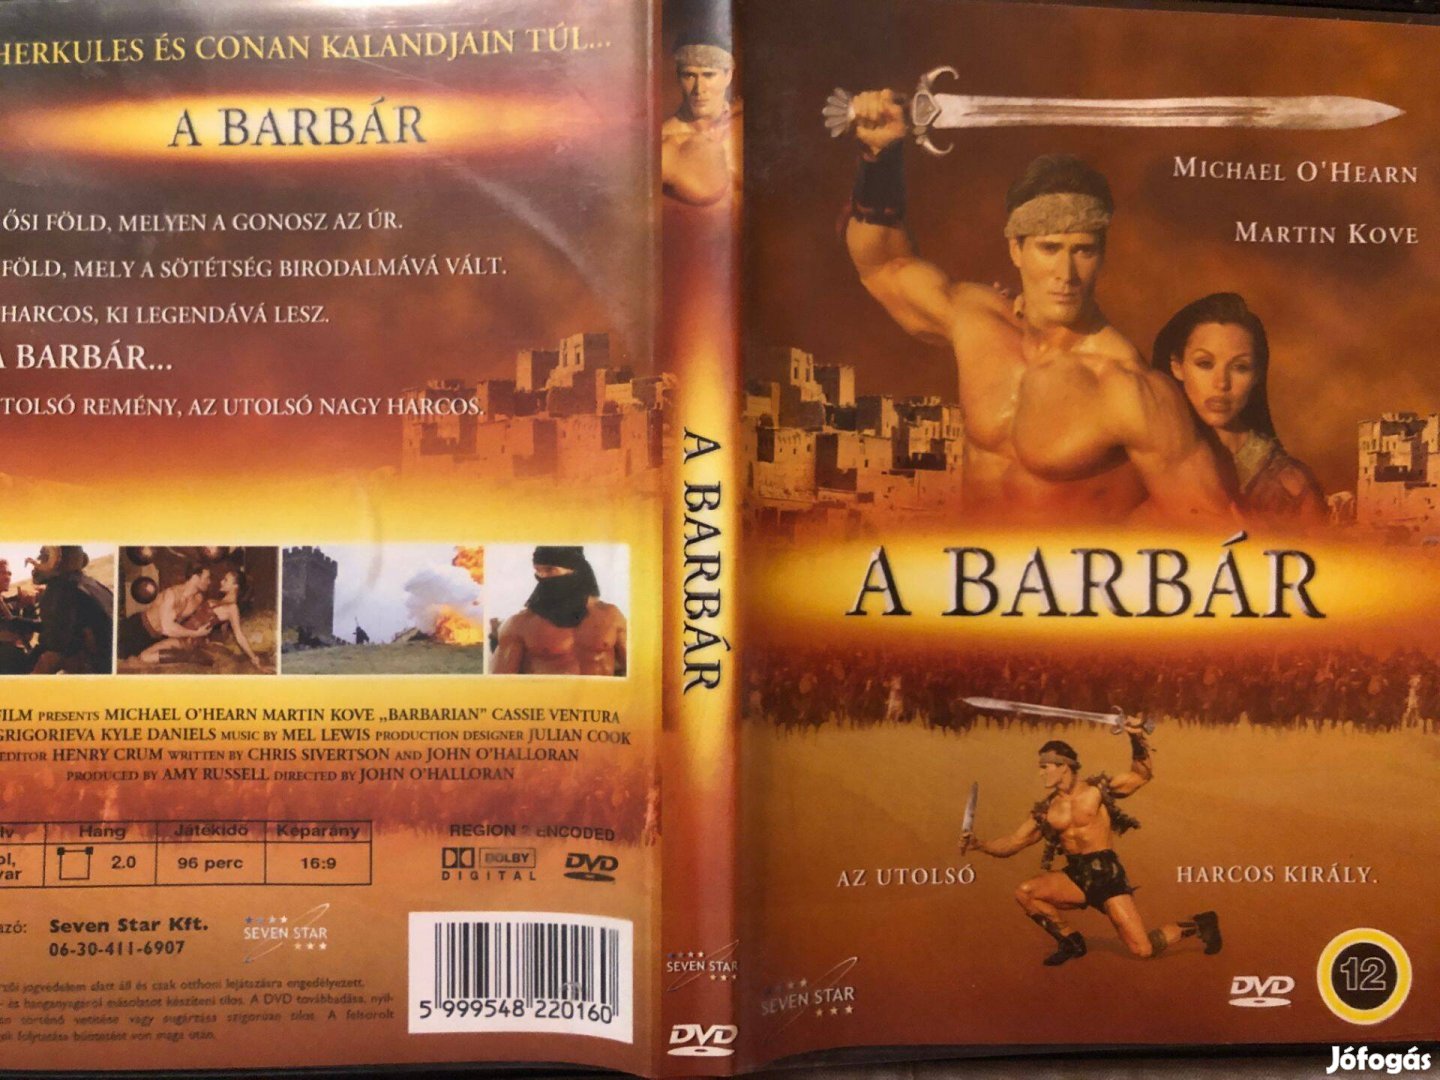 A barbár (Michael OHearn) DVD